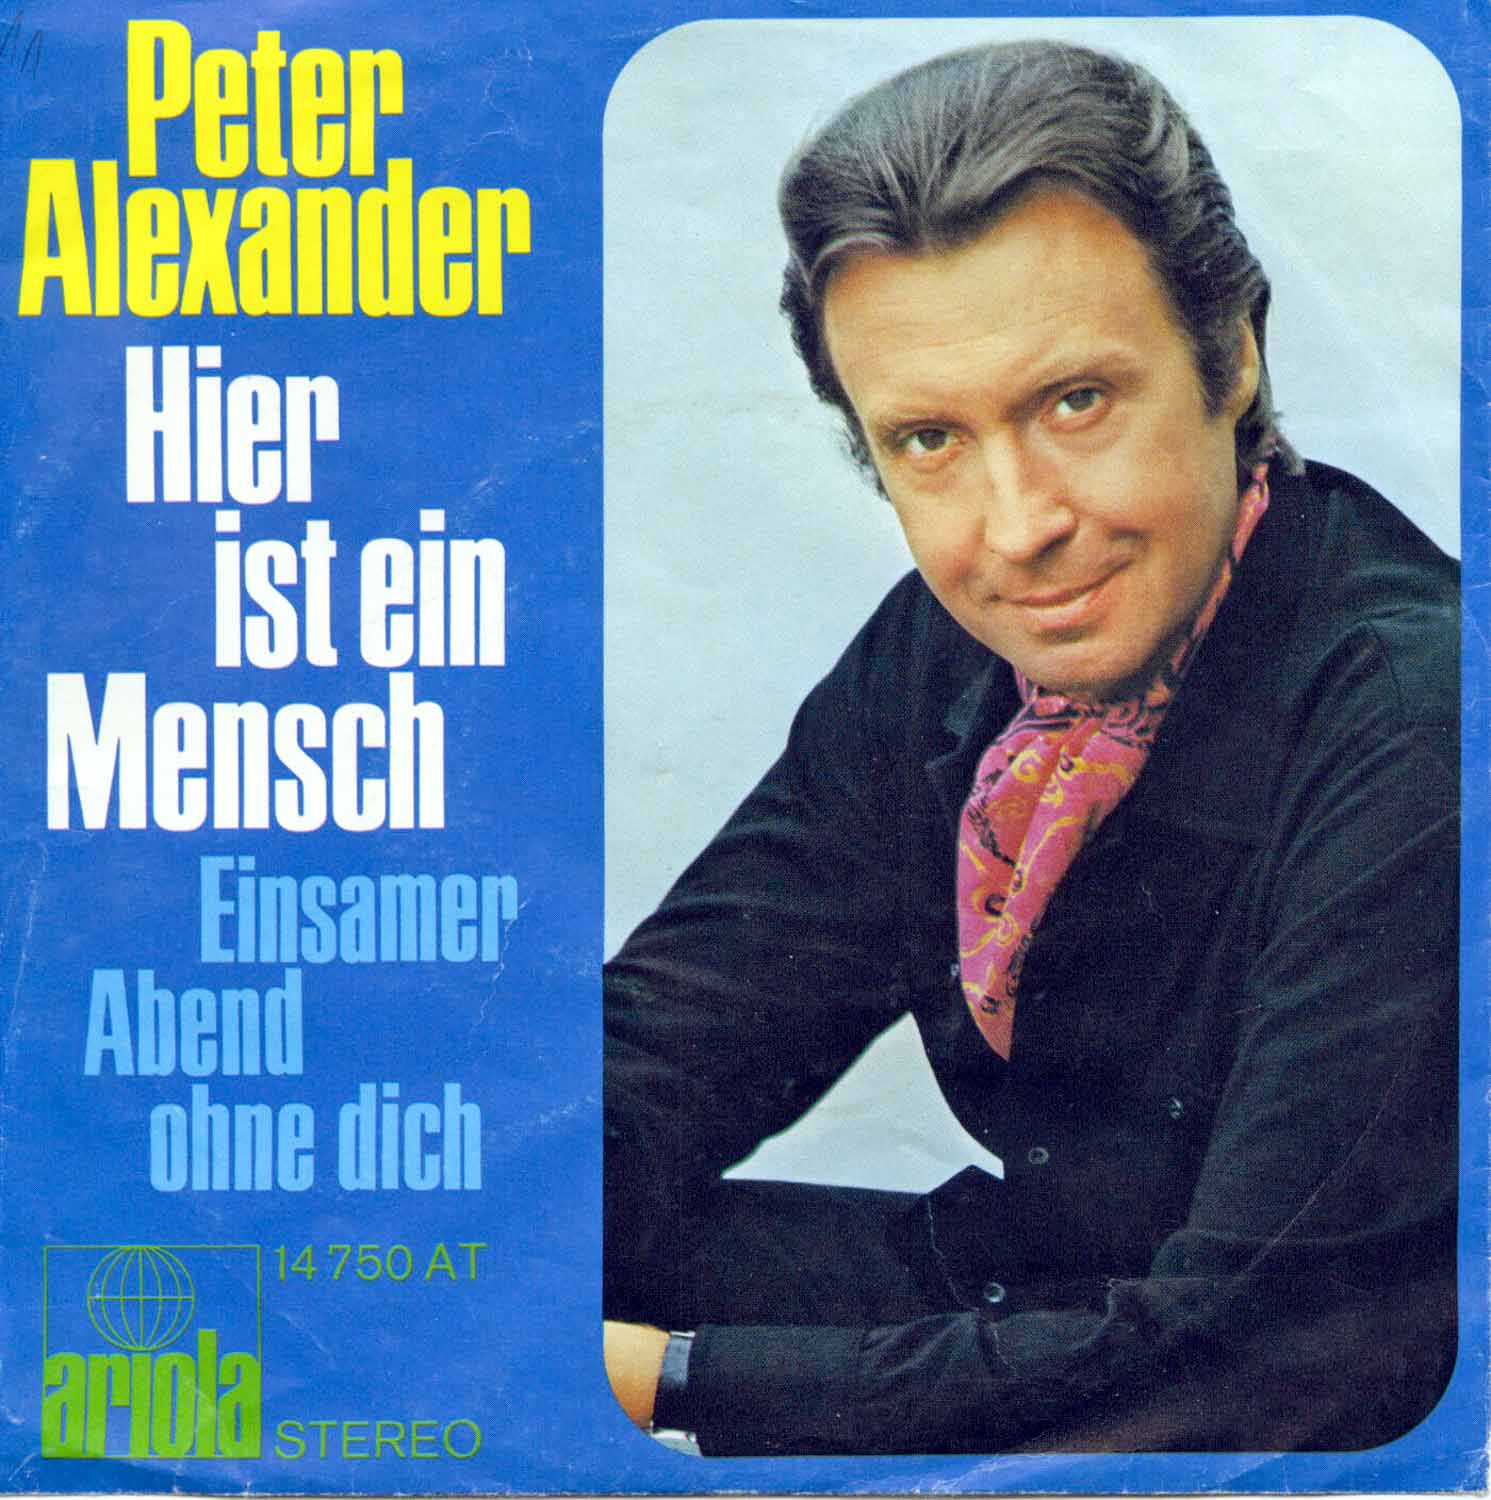 Peter Alexander  Hier ist ein Mensch / Einsamer Abend ohne dich (14 750 AT)  *Single 7'' (Vinyl)*. 